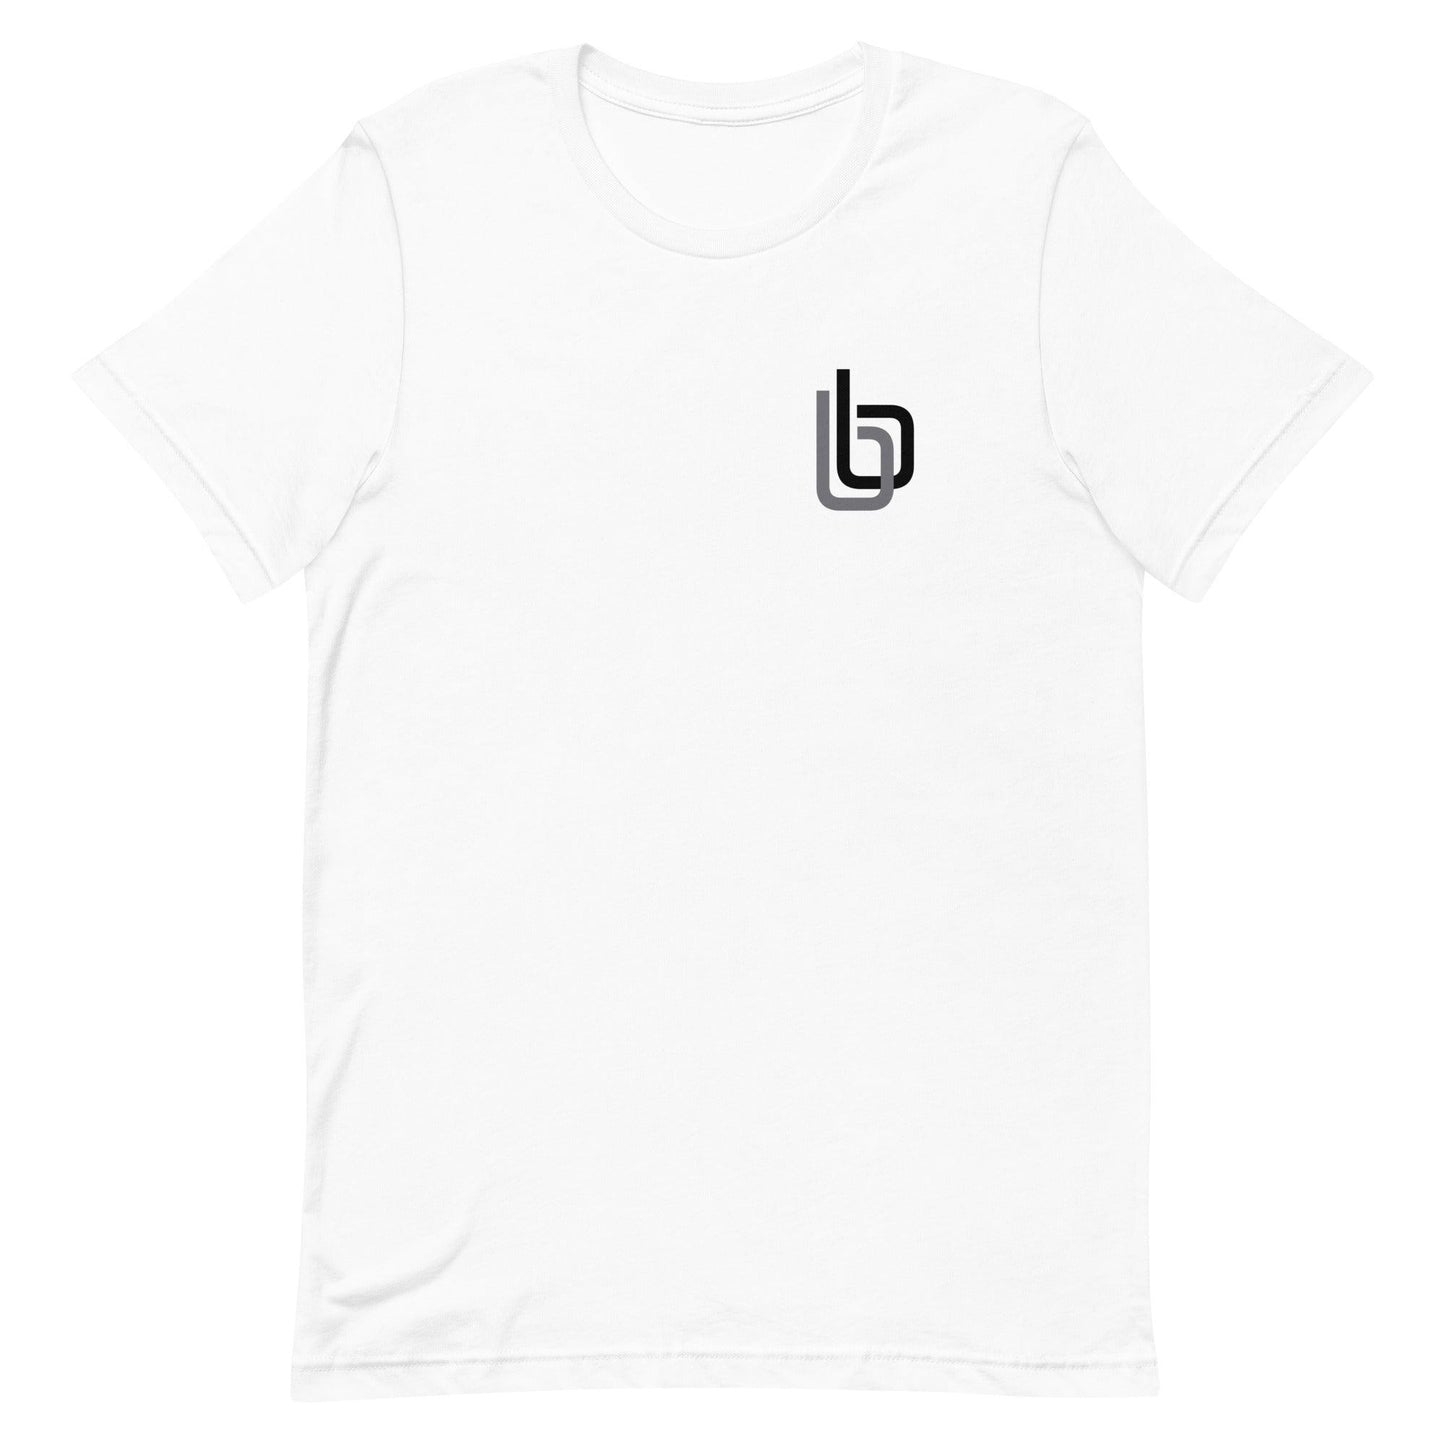 Byron Buxton “bb” t-shirt - Fan Arch